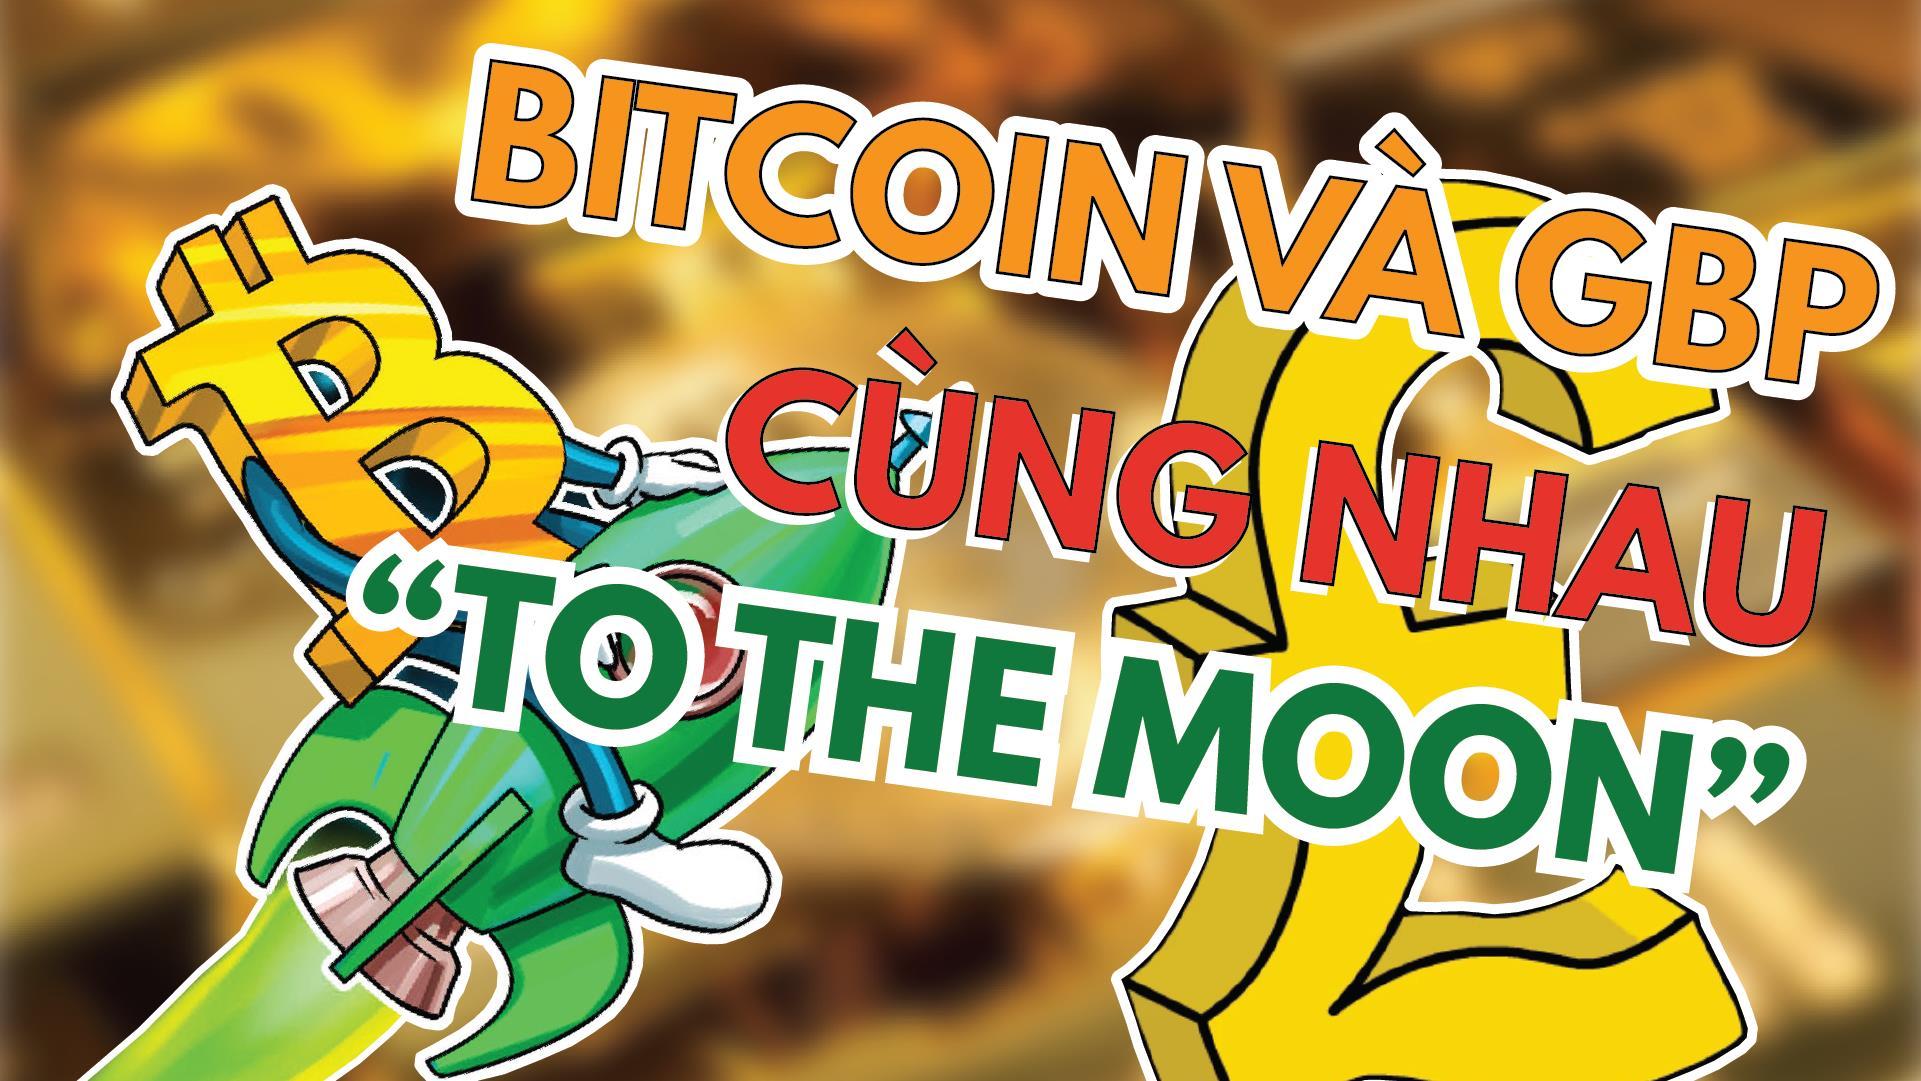 [ BẢN TIN DỰ BÁO TIỀN TỆ ] Vàng Biến Động Mạnh Hai Chiều, Bảng Anh Và Bitcoin Cùng Nhau "To The Moon"